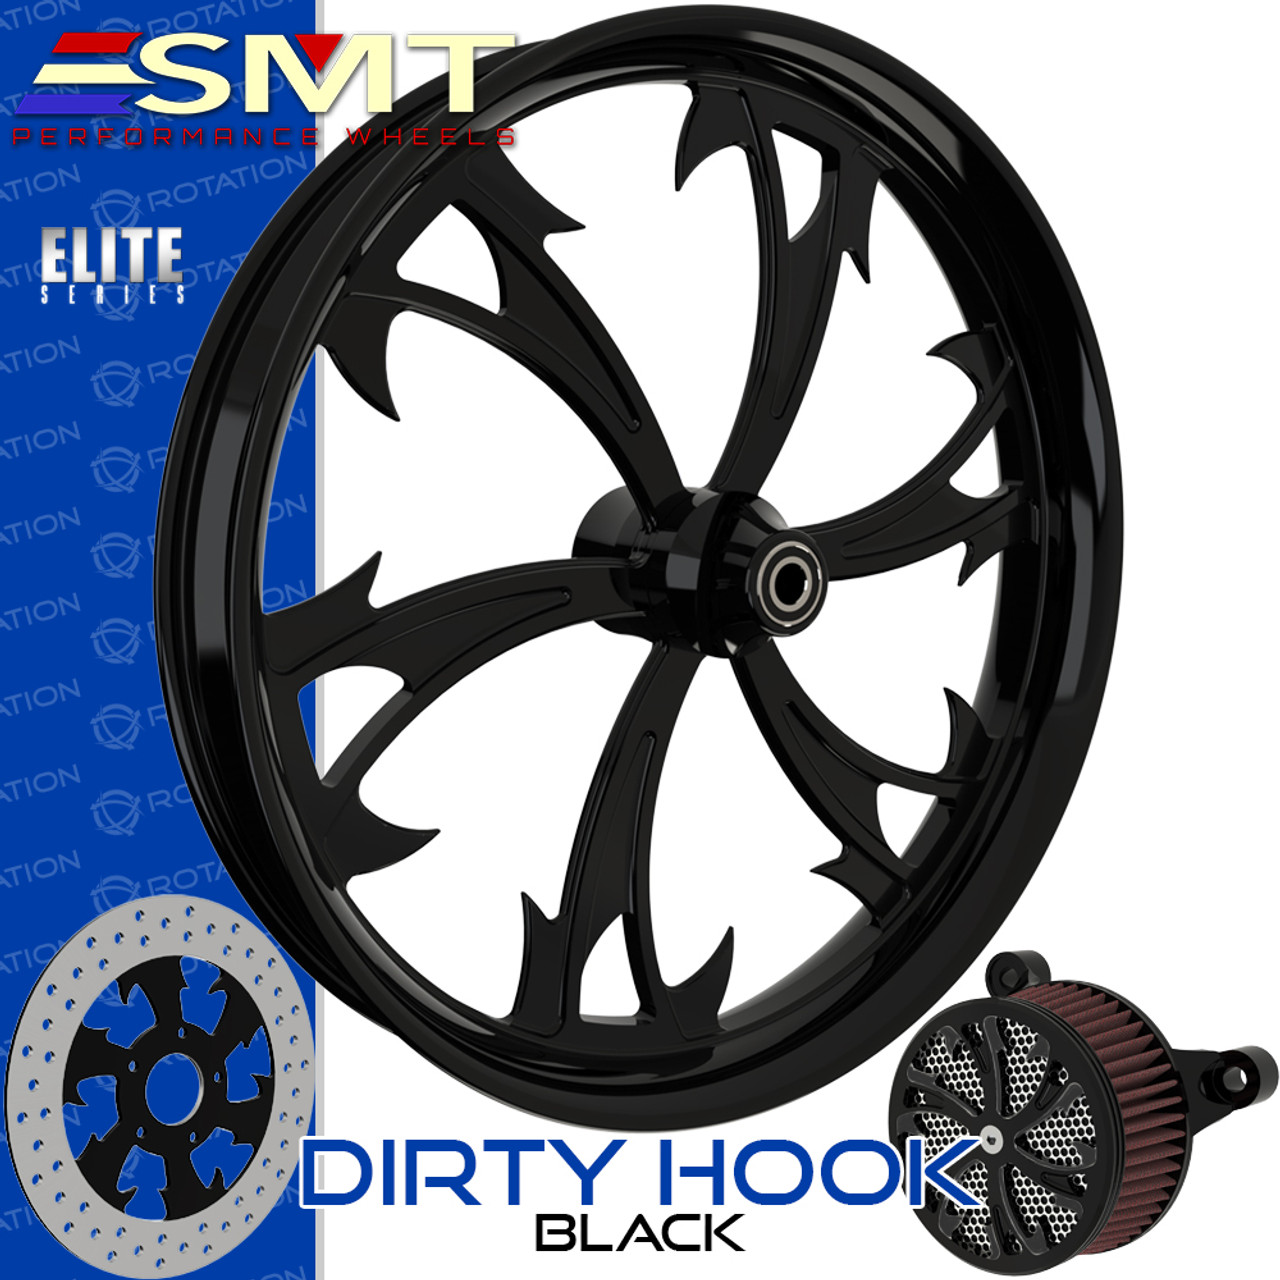 SMT Machining Dirty Hooker Black Custom Motorcycle Wheel Package